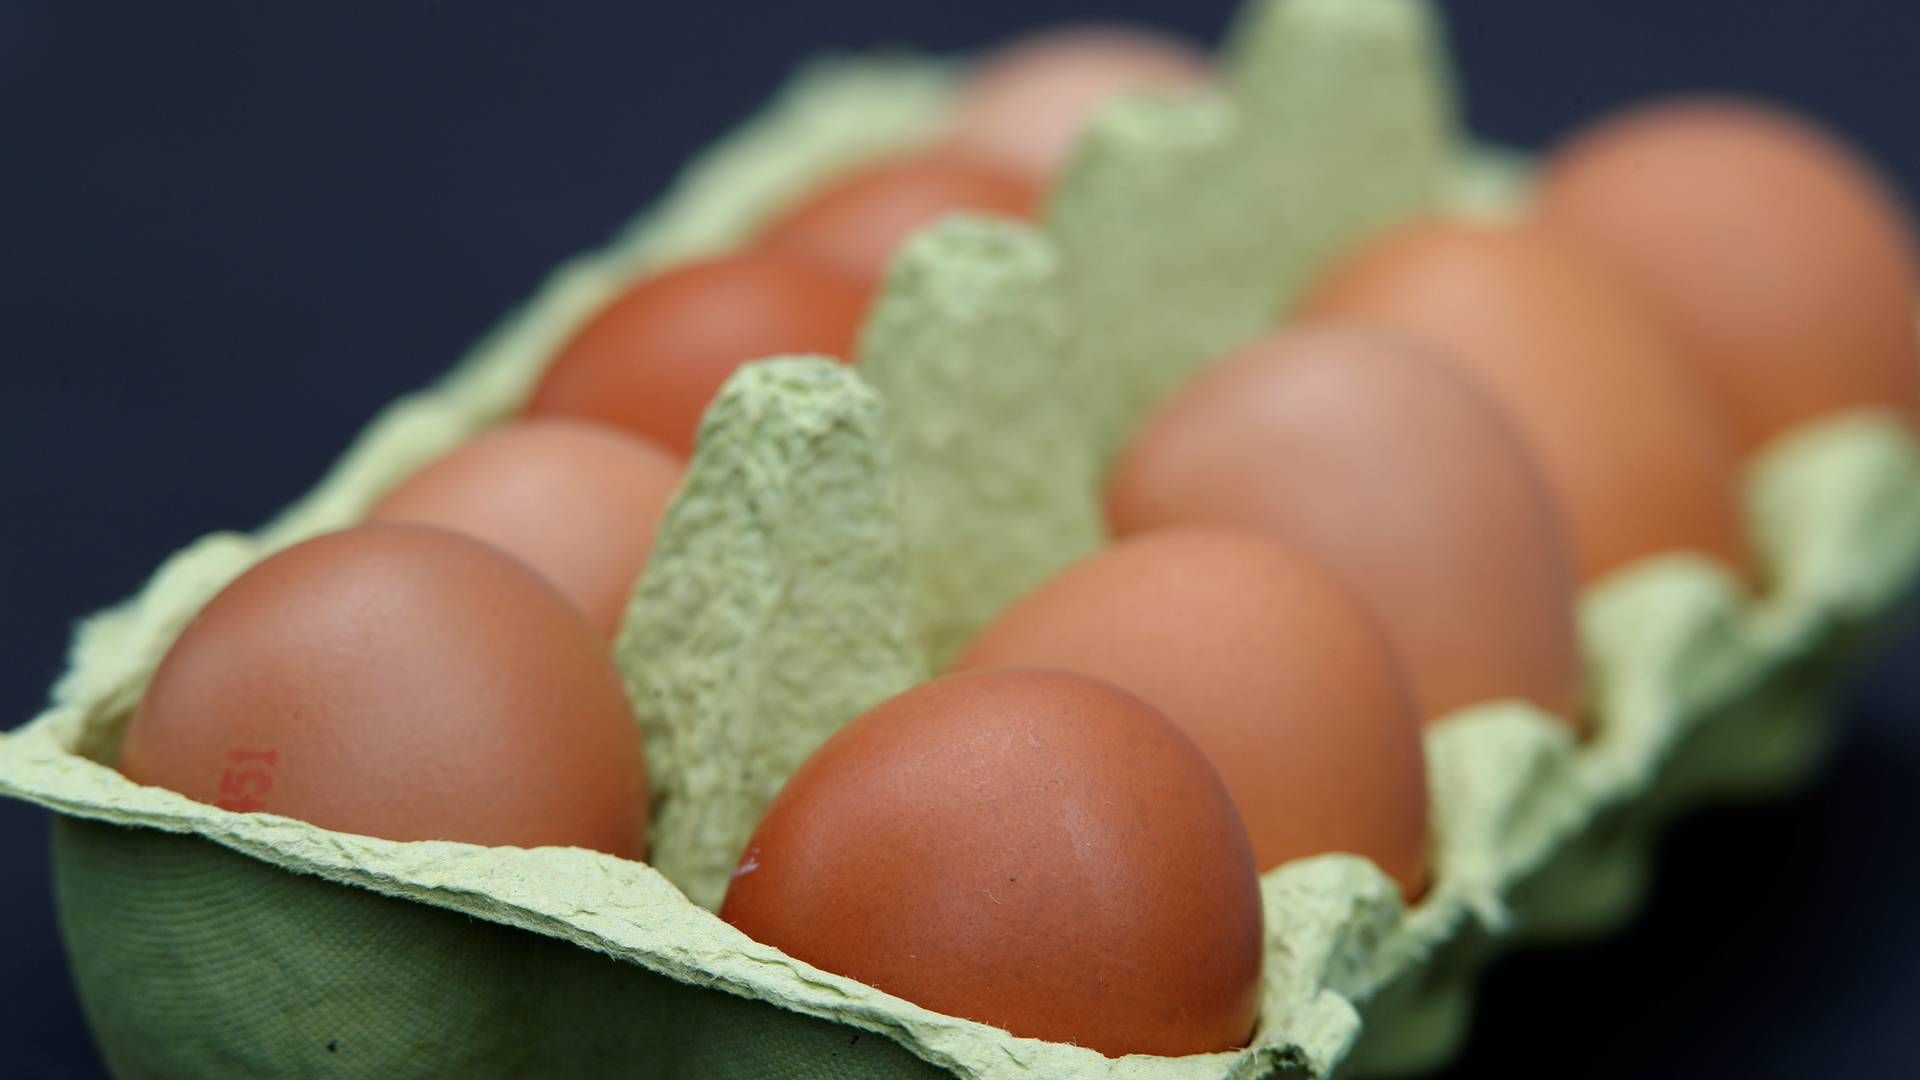 I en enkelt prøve fra æg blev der fundet rester af et fodertilsætningsstof. | Foto: Wolfgang Rattay/Reuters/Ritzau Scanpix